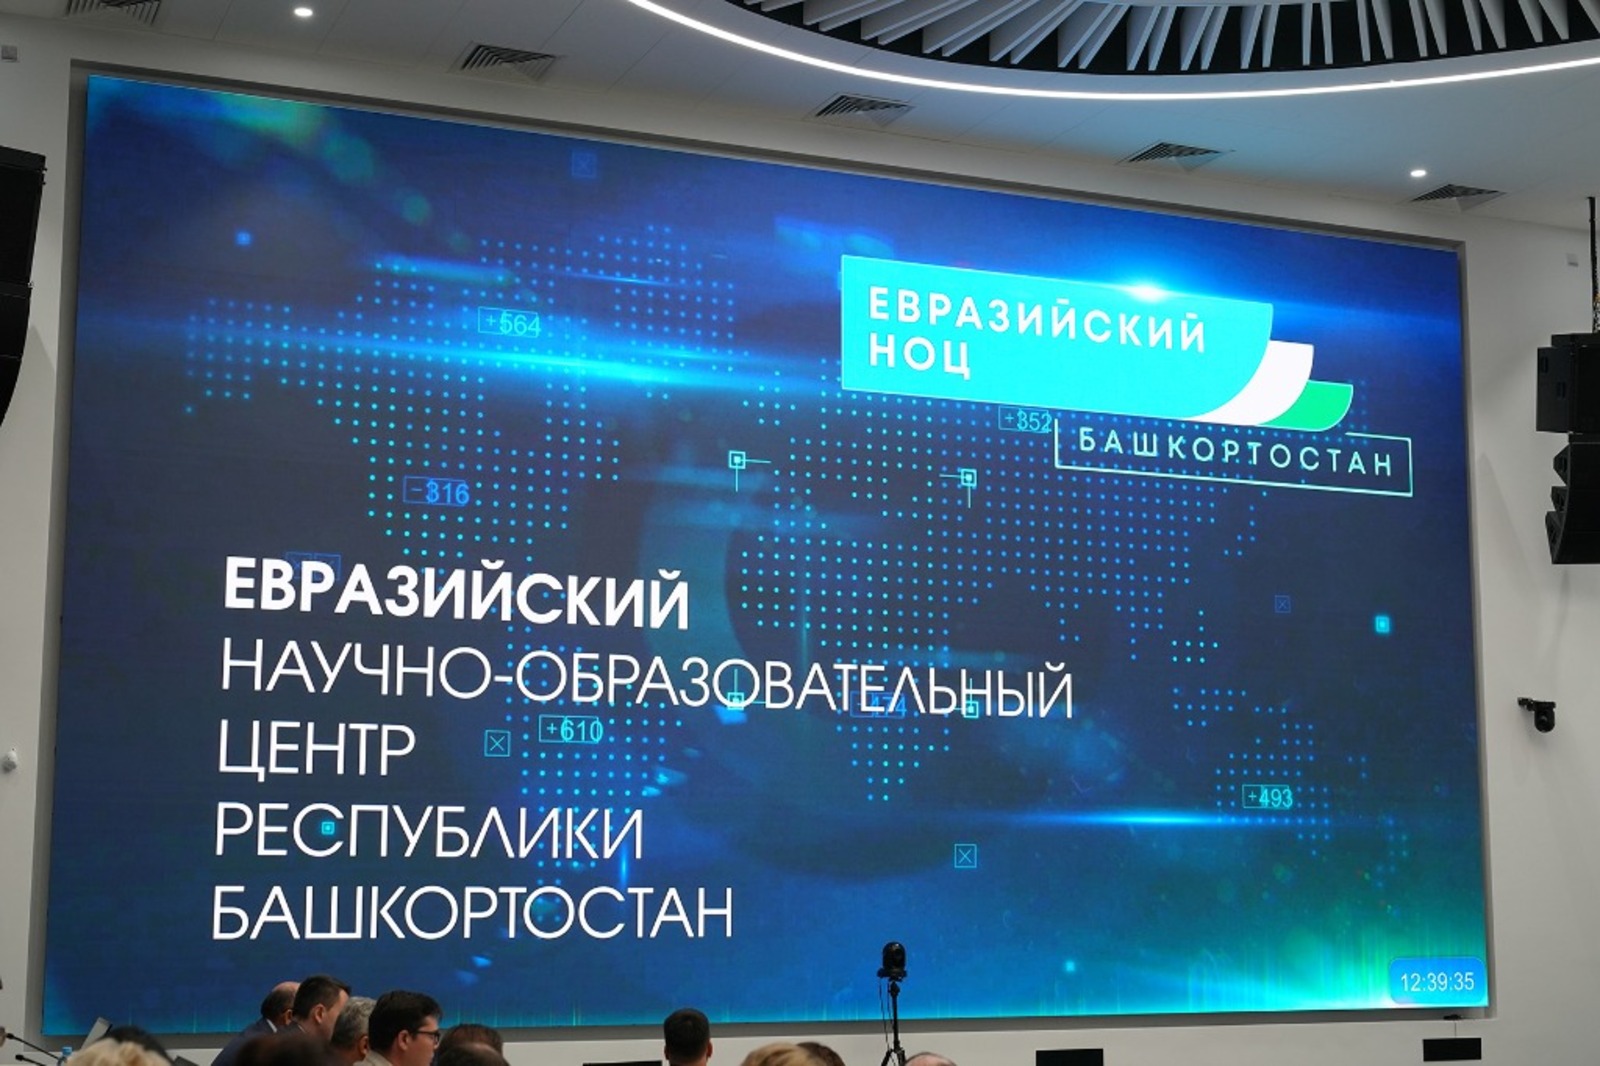 Евразийский научно-образовательный центр мирового уровня – в тройке лучших НОЦ в России